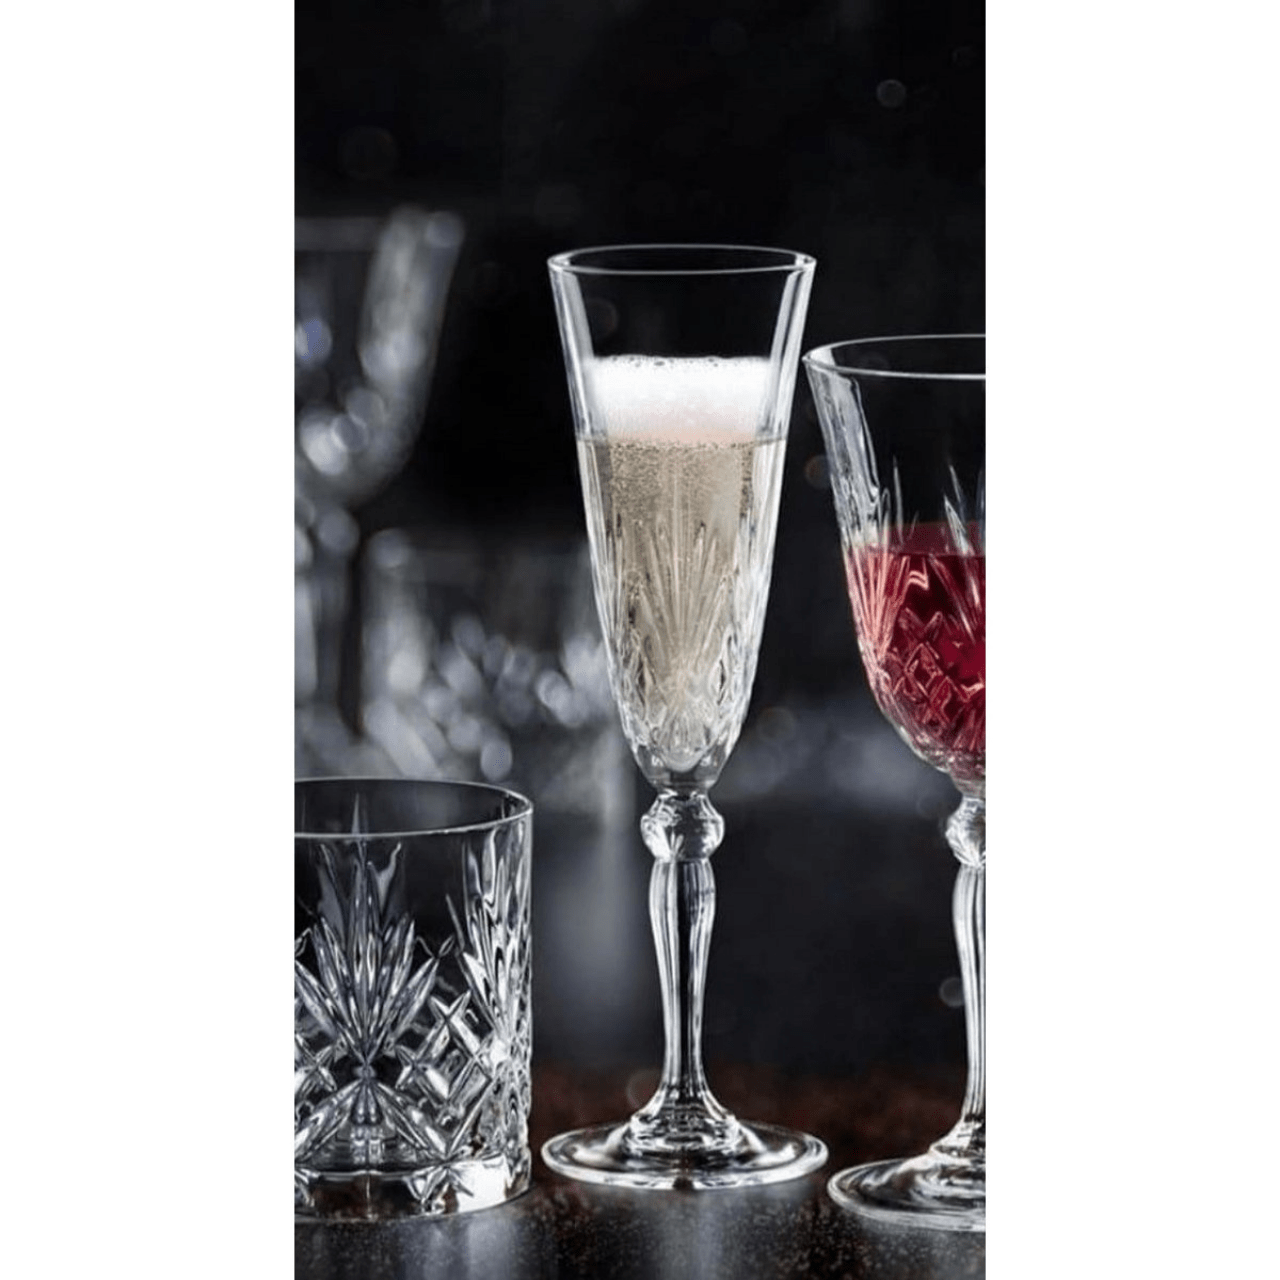 RCR - Cristalleria Italiana Glazen Champagneglas - 6-delige set - 16cl | Melodia